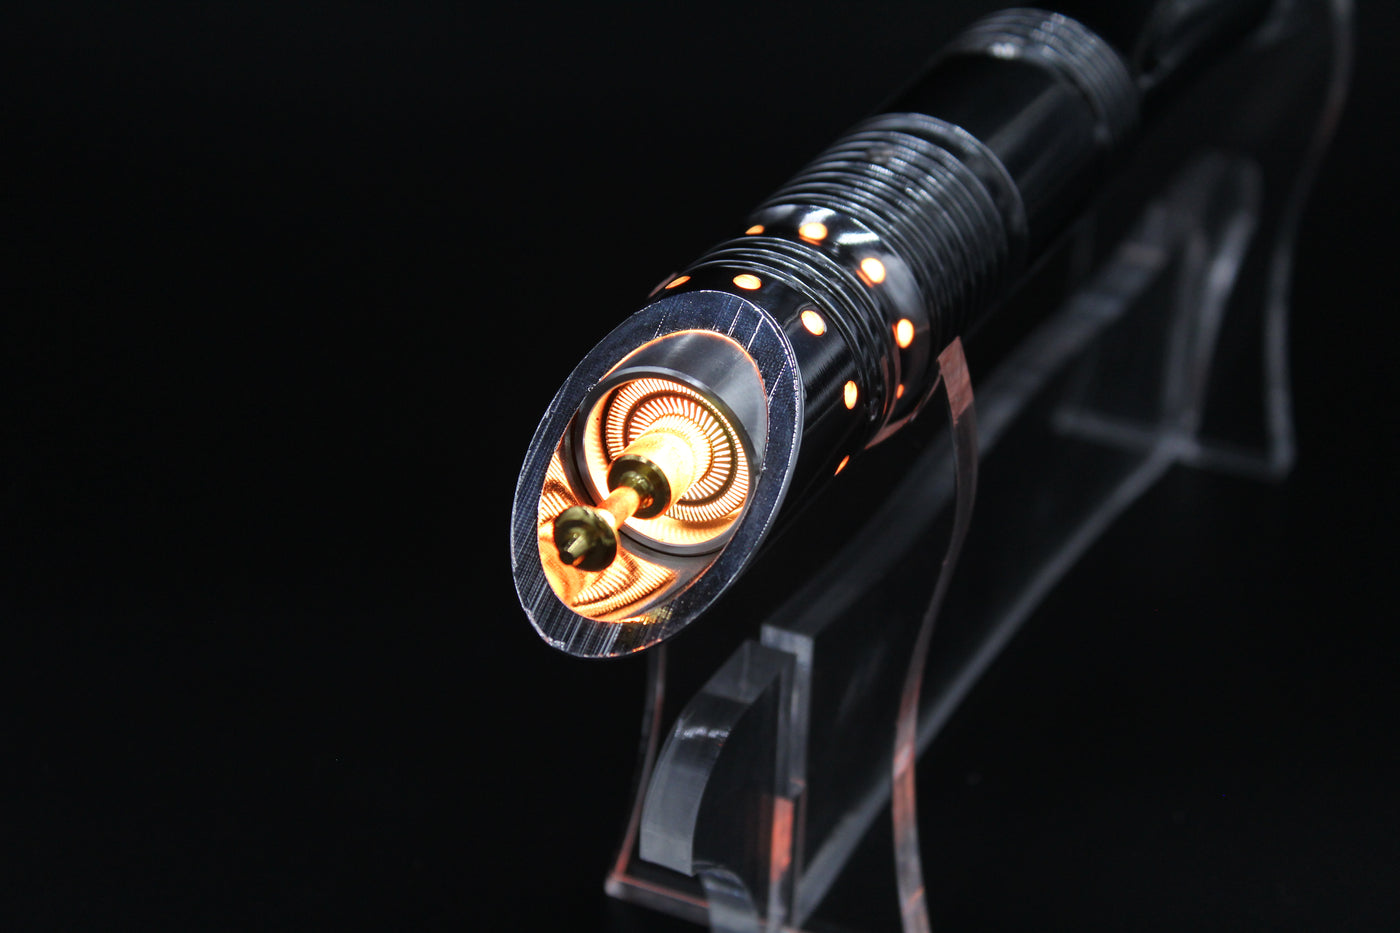 Accessoires Kit - KenJo Sabers - Star Wars Lightsaber replica Jedi Sith - Best sabershop Europe - Nederland light sabers kopen -